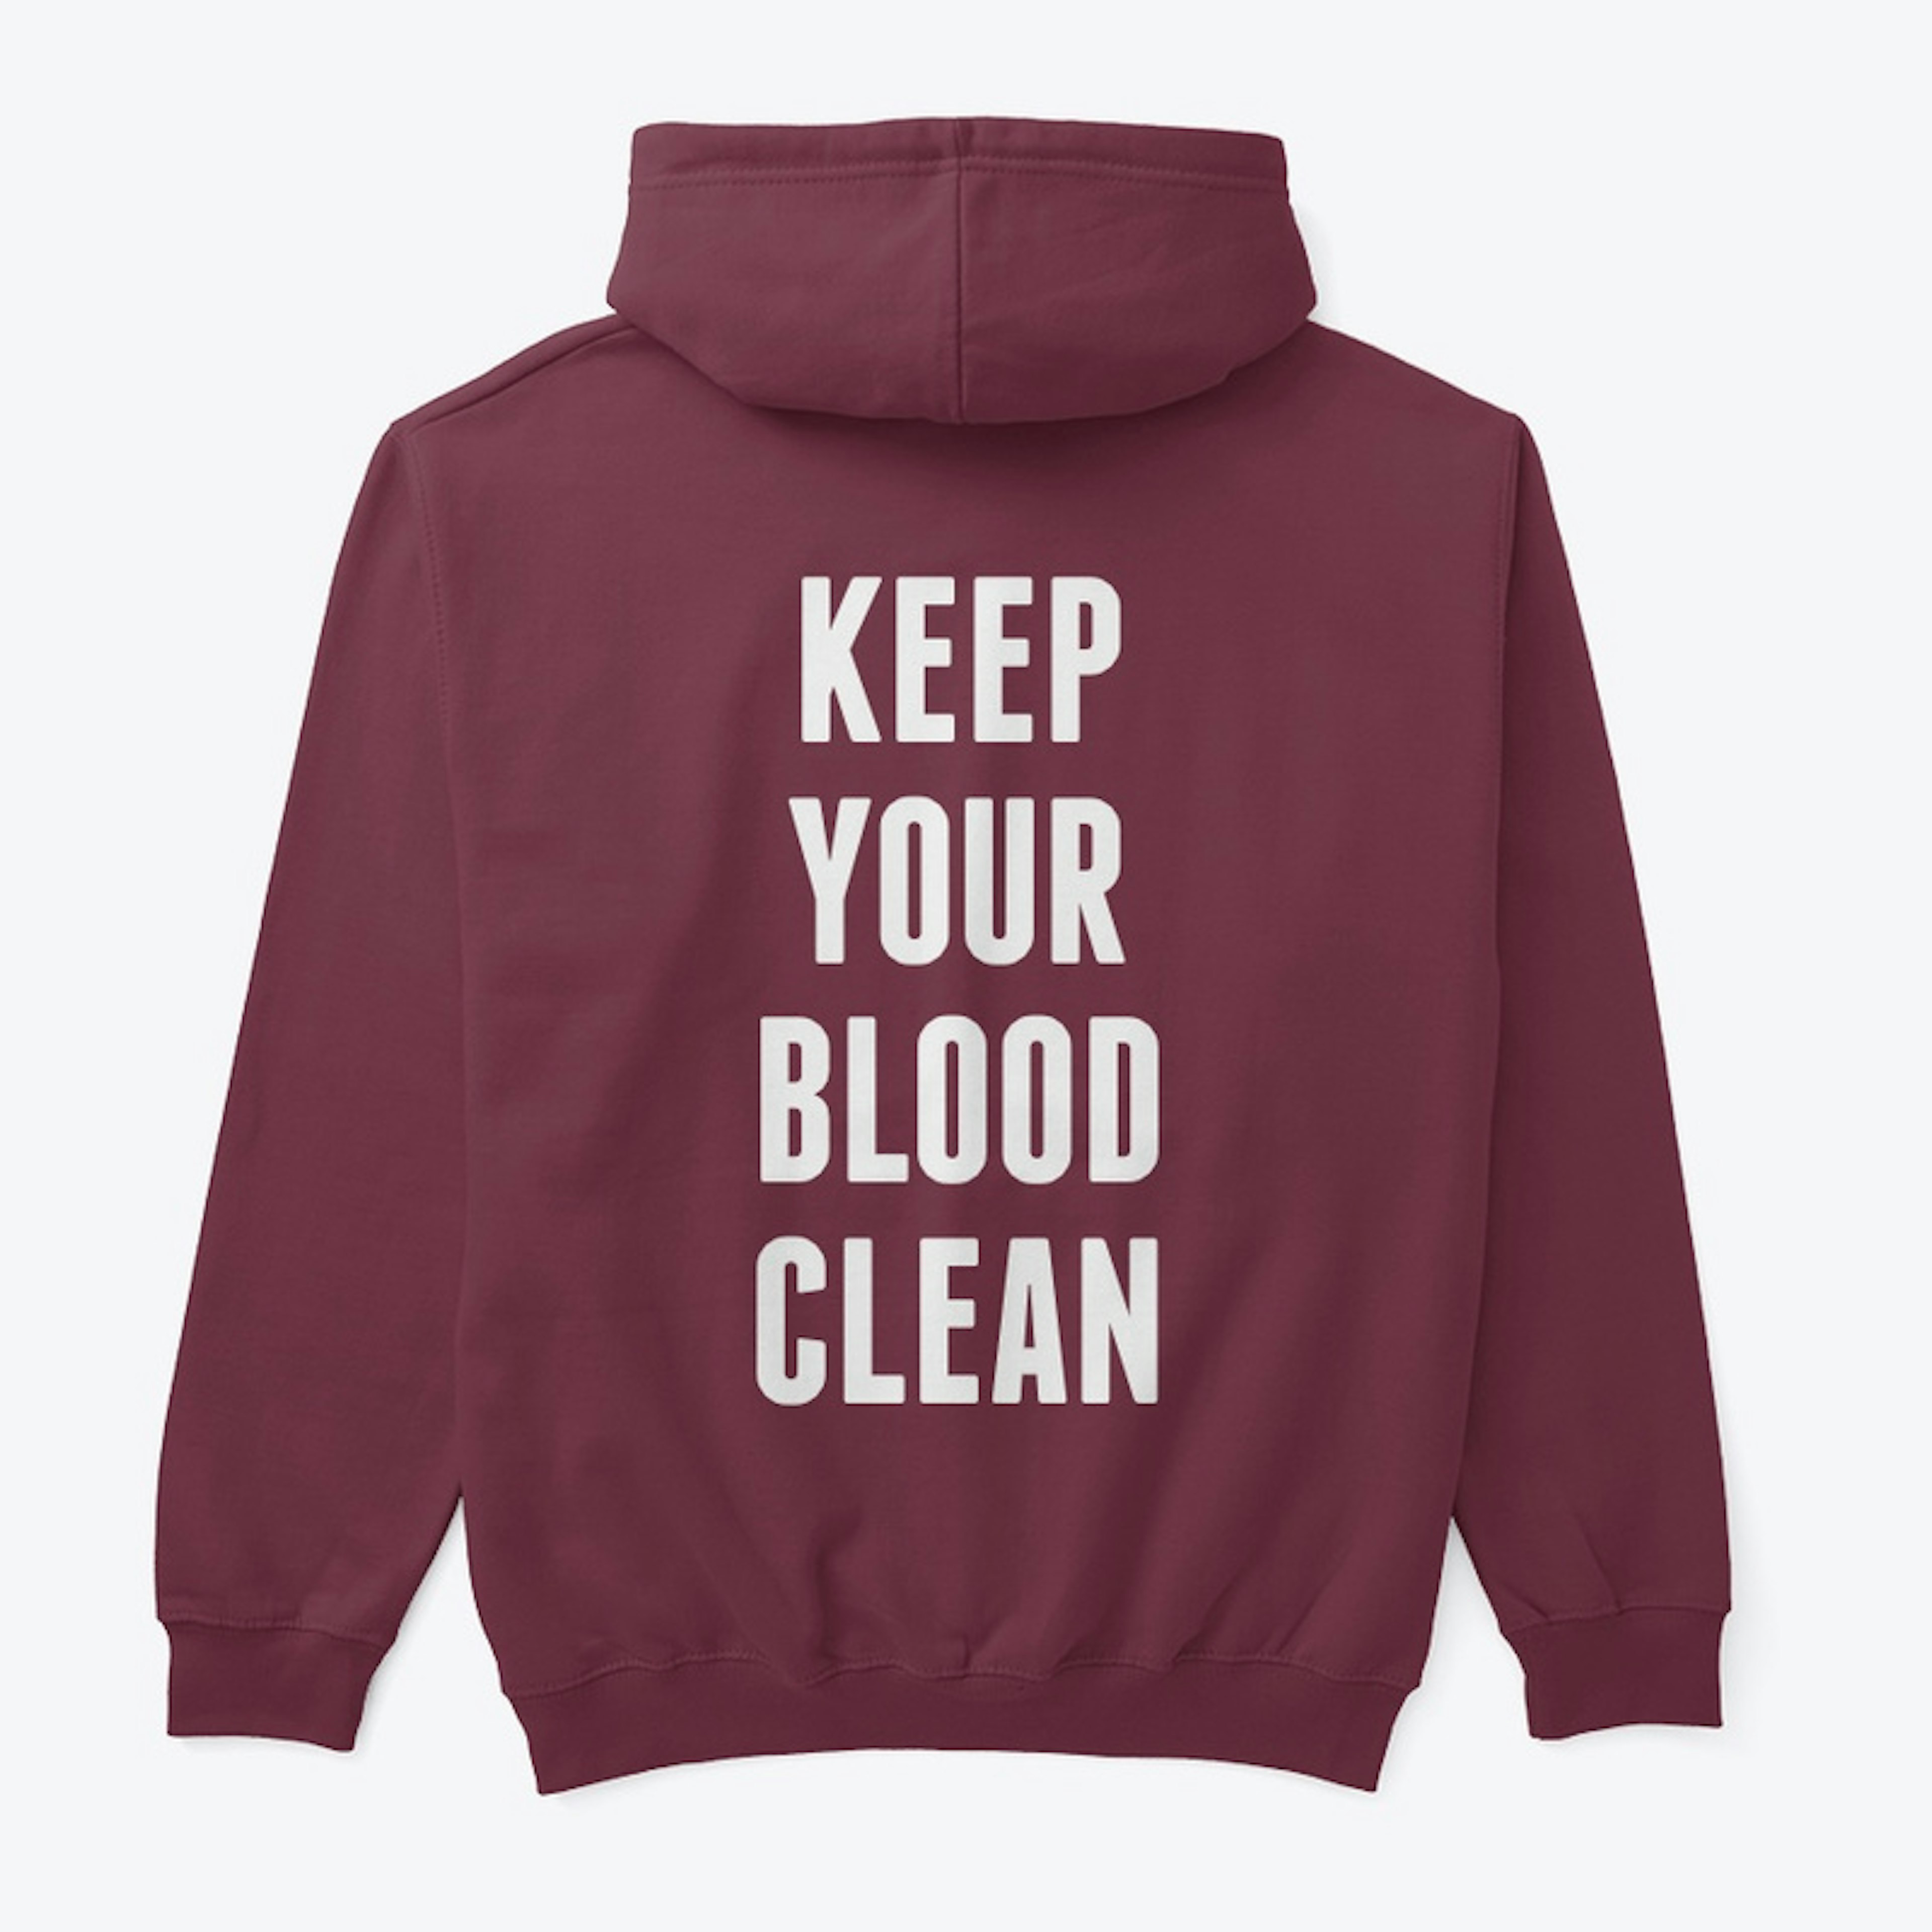 TSG X - Keep Your Blood Clean 